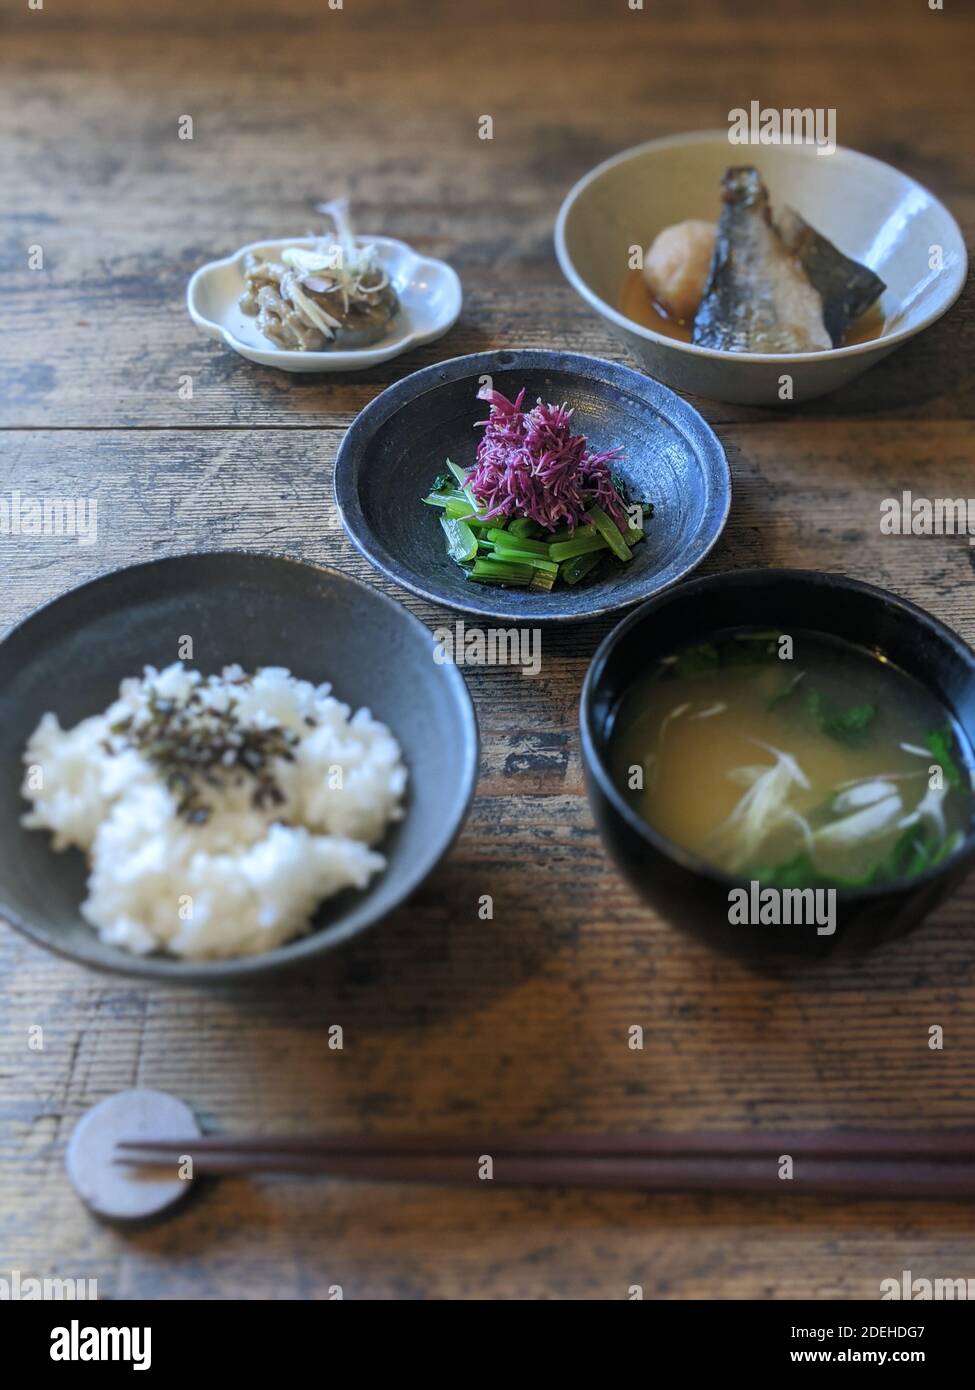 Ichi-ju San-sai (Rice, 1 Soup and 3 Side dishes) in Shonai, Yamagata Prefecture, Japan Stock Photo